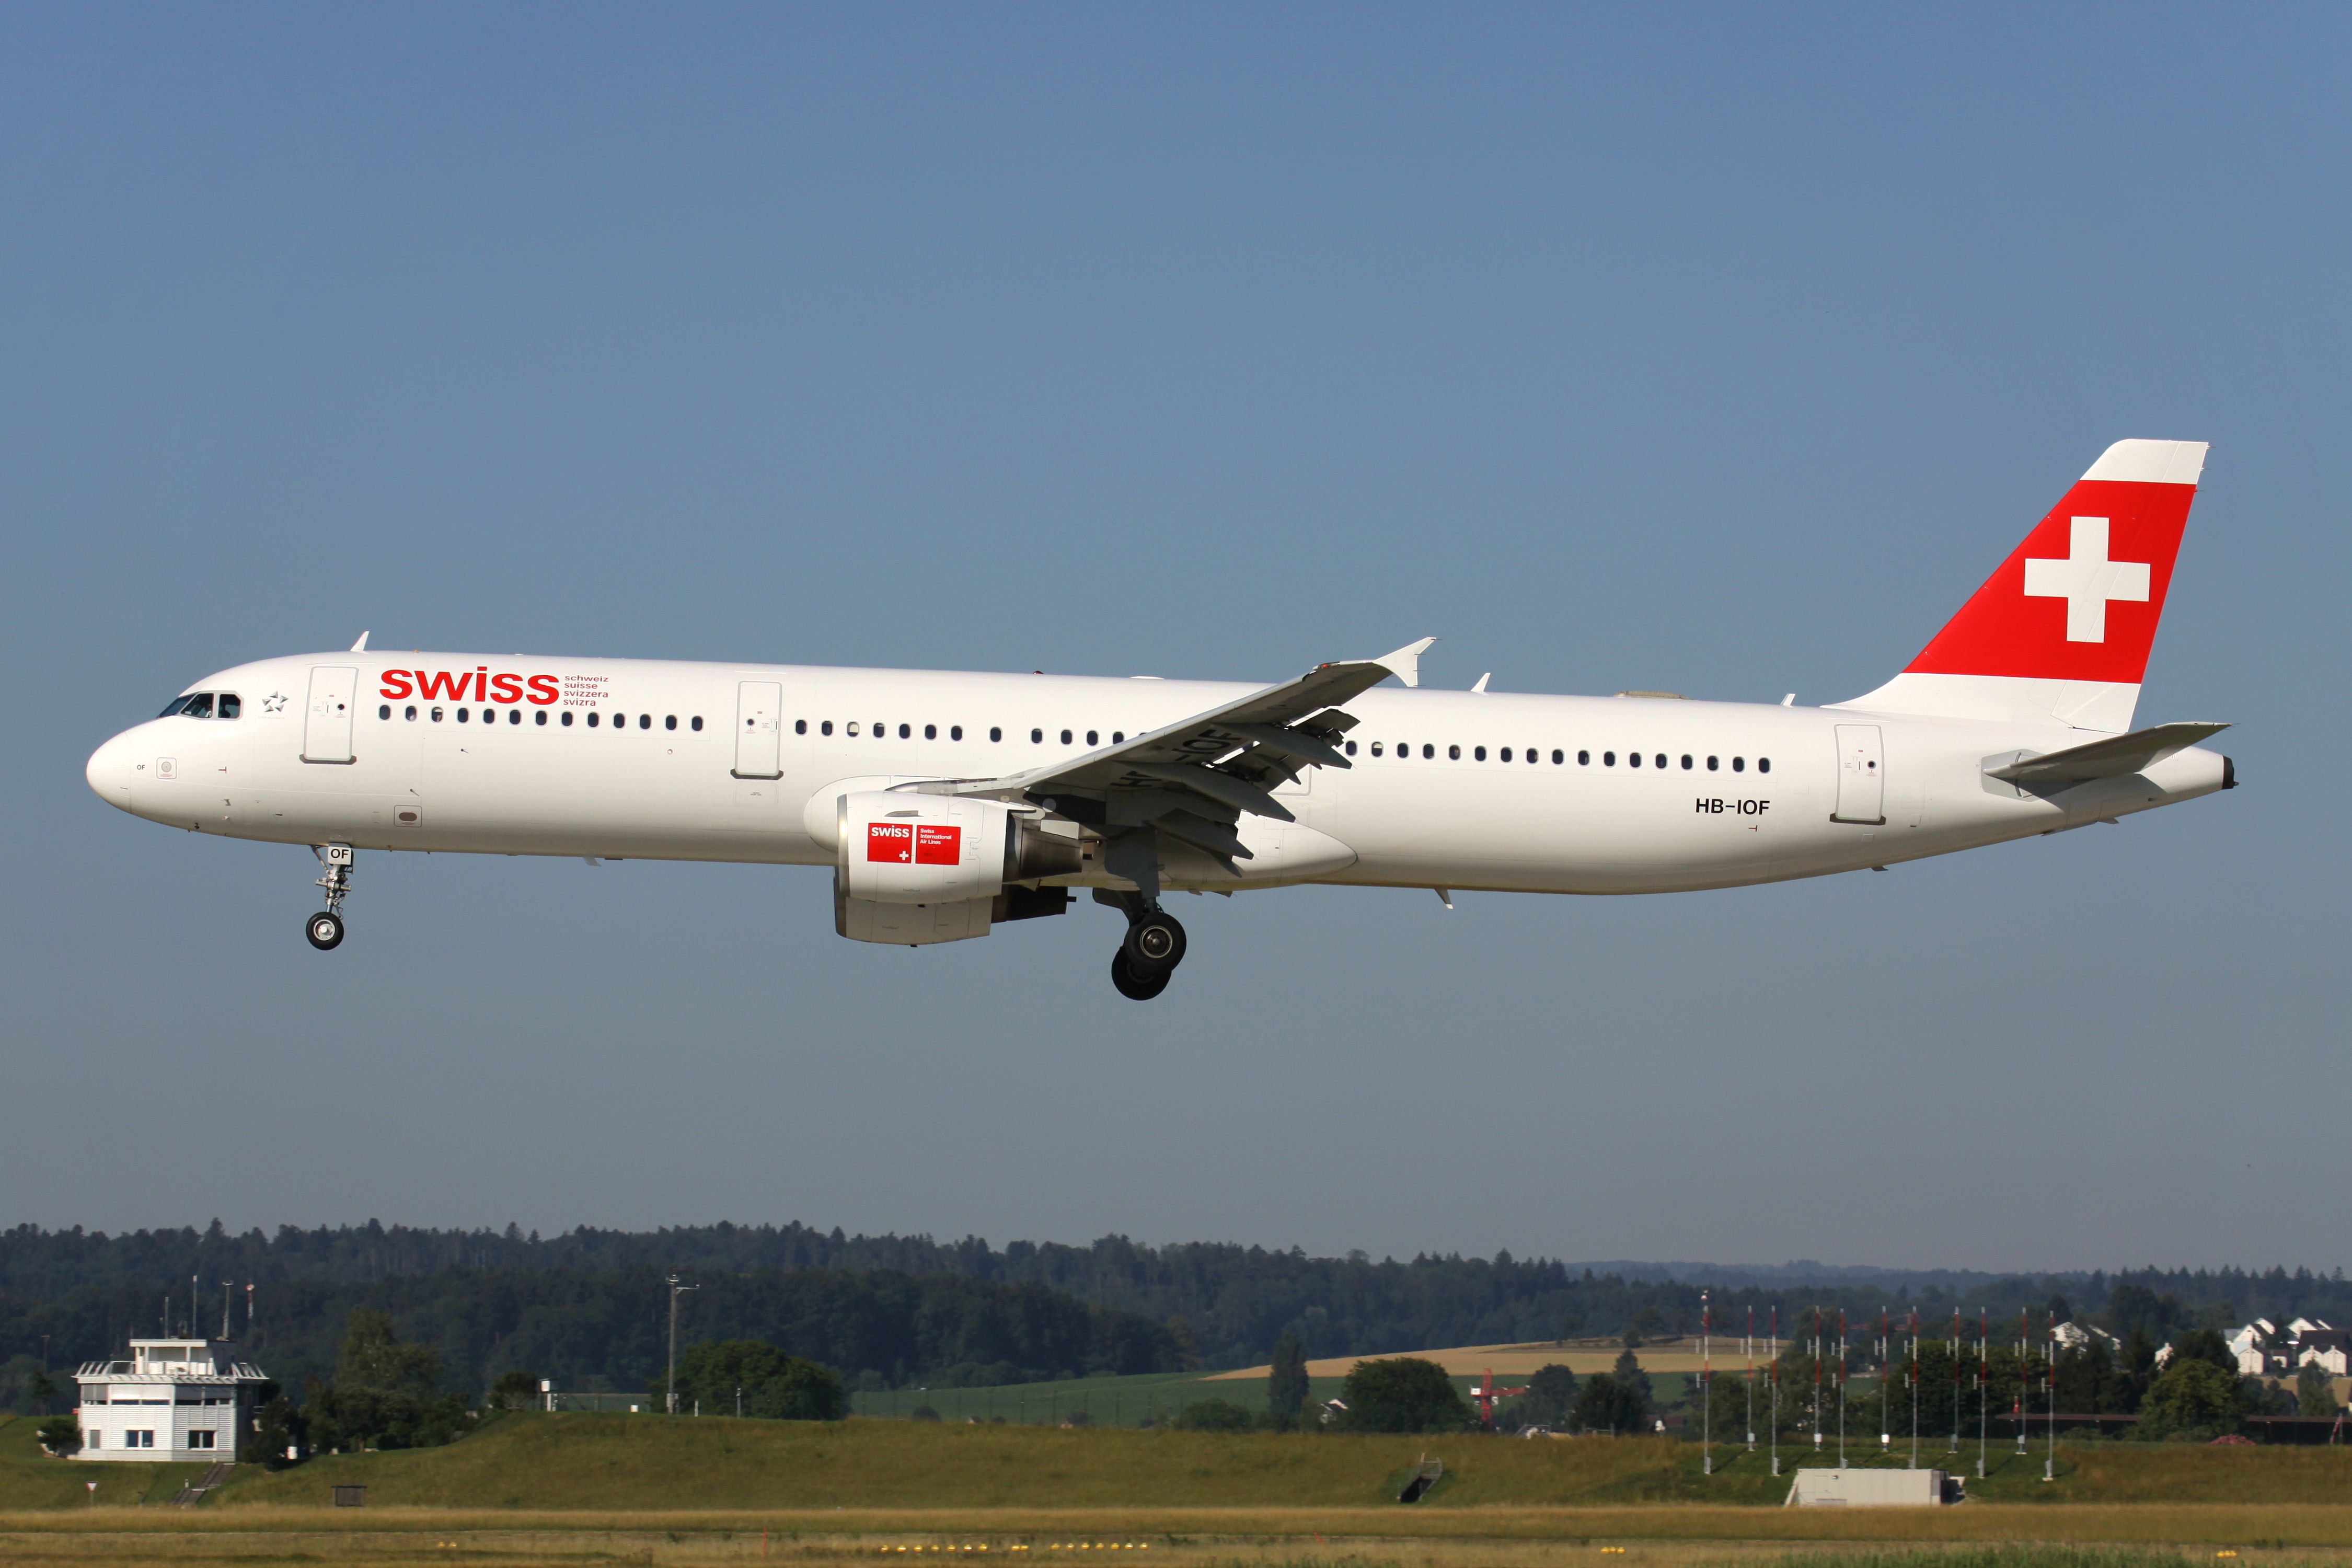 SWISS Airbus A321-100 Landing In Zurich